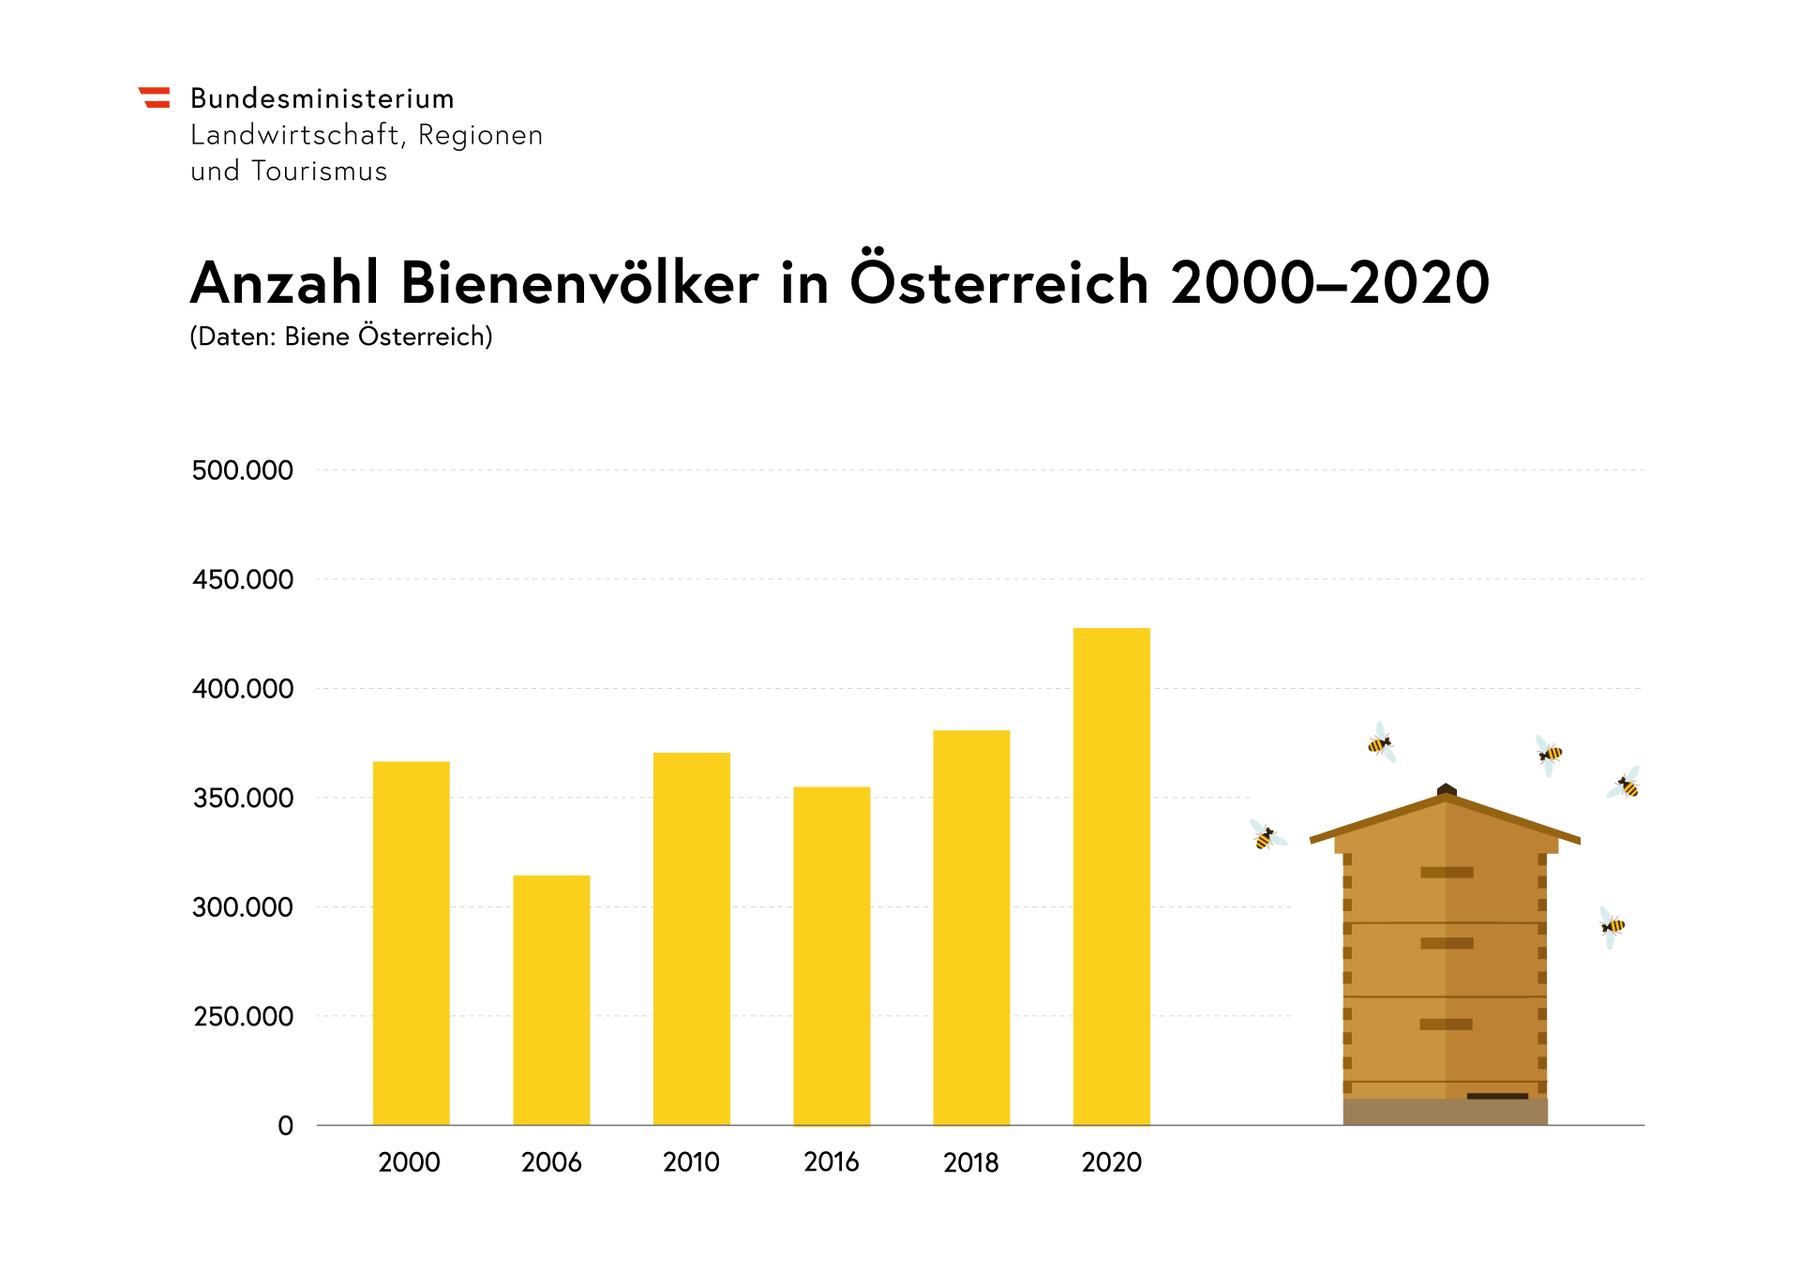 Anzahl BienenhalterInnen in Österreich 2000-2020.png